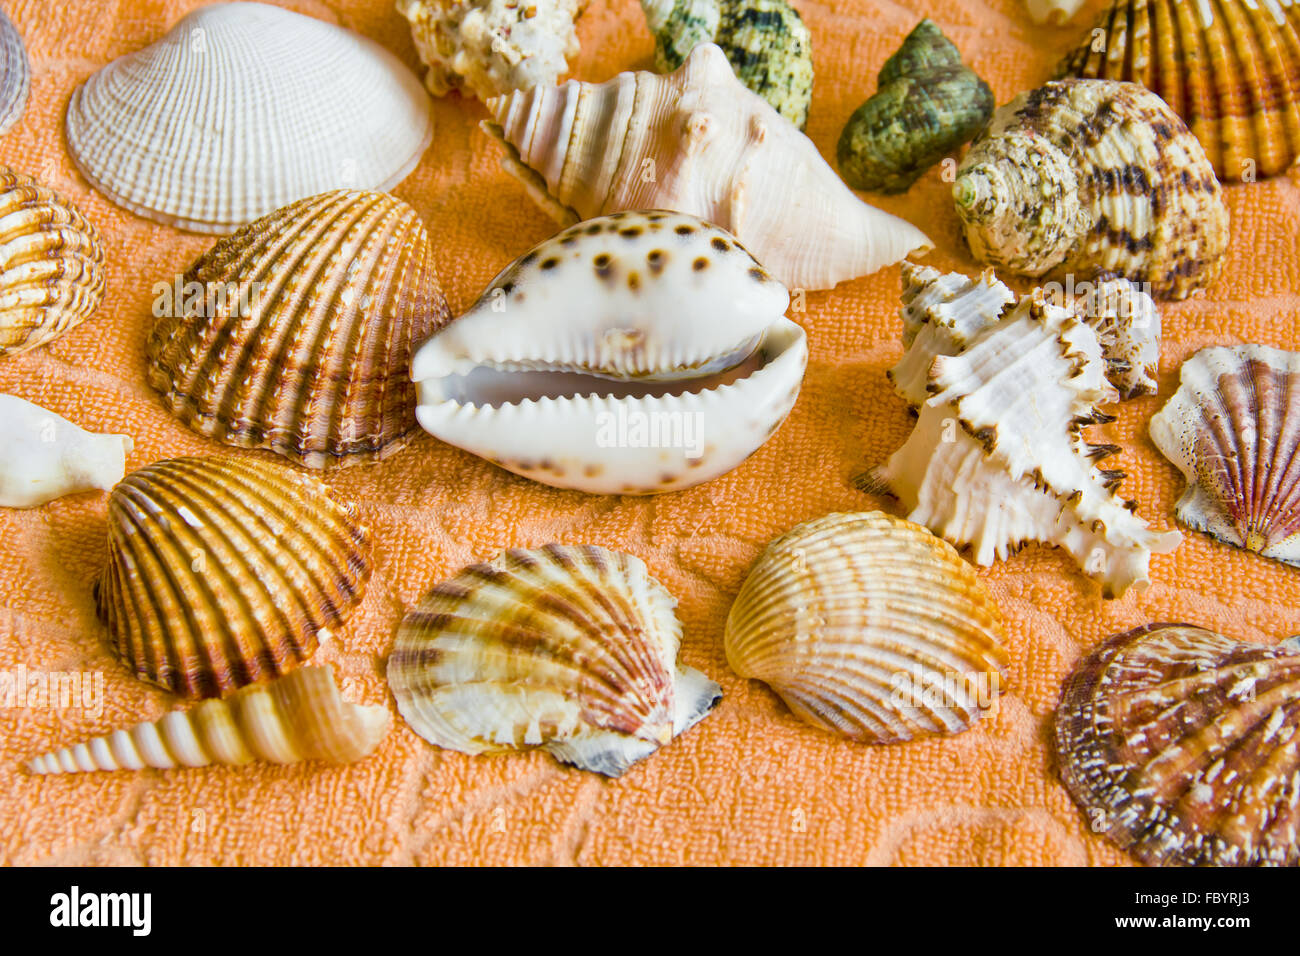 Conchas marinas Foto de stock